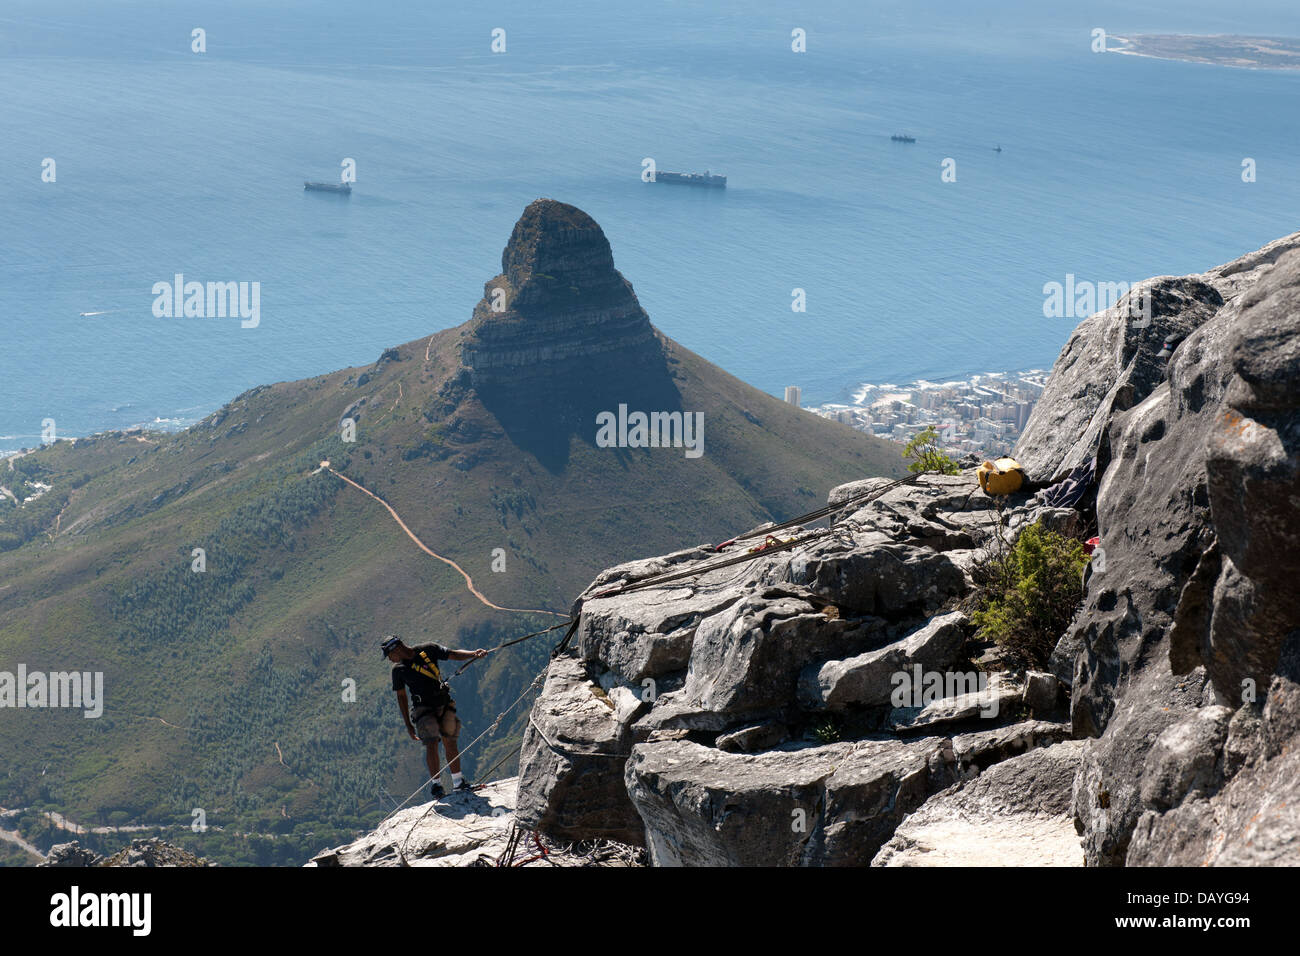 La descente en rappel sur la Montagne de la table avec rappel l'Afrique, Cape Town, Afrique du Sud Banque D'Images